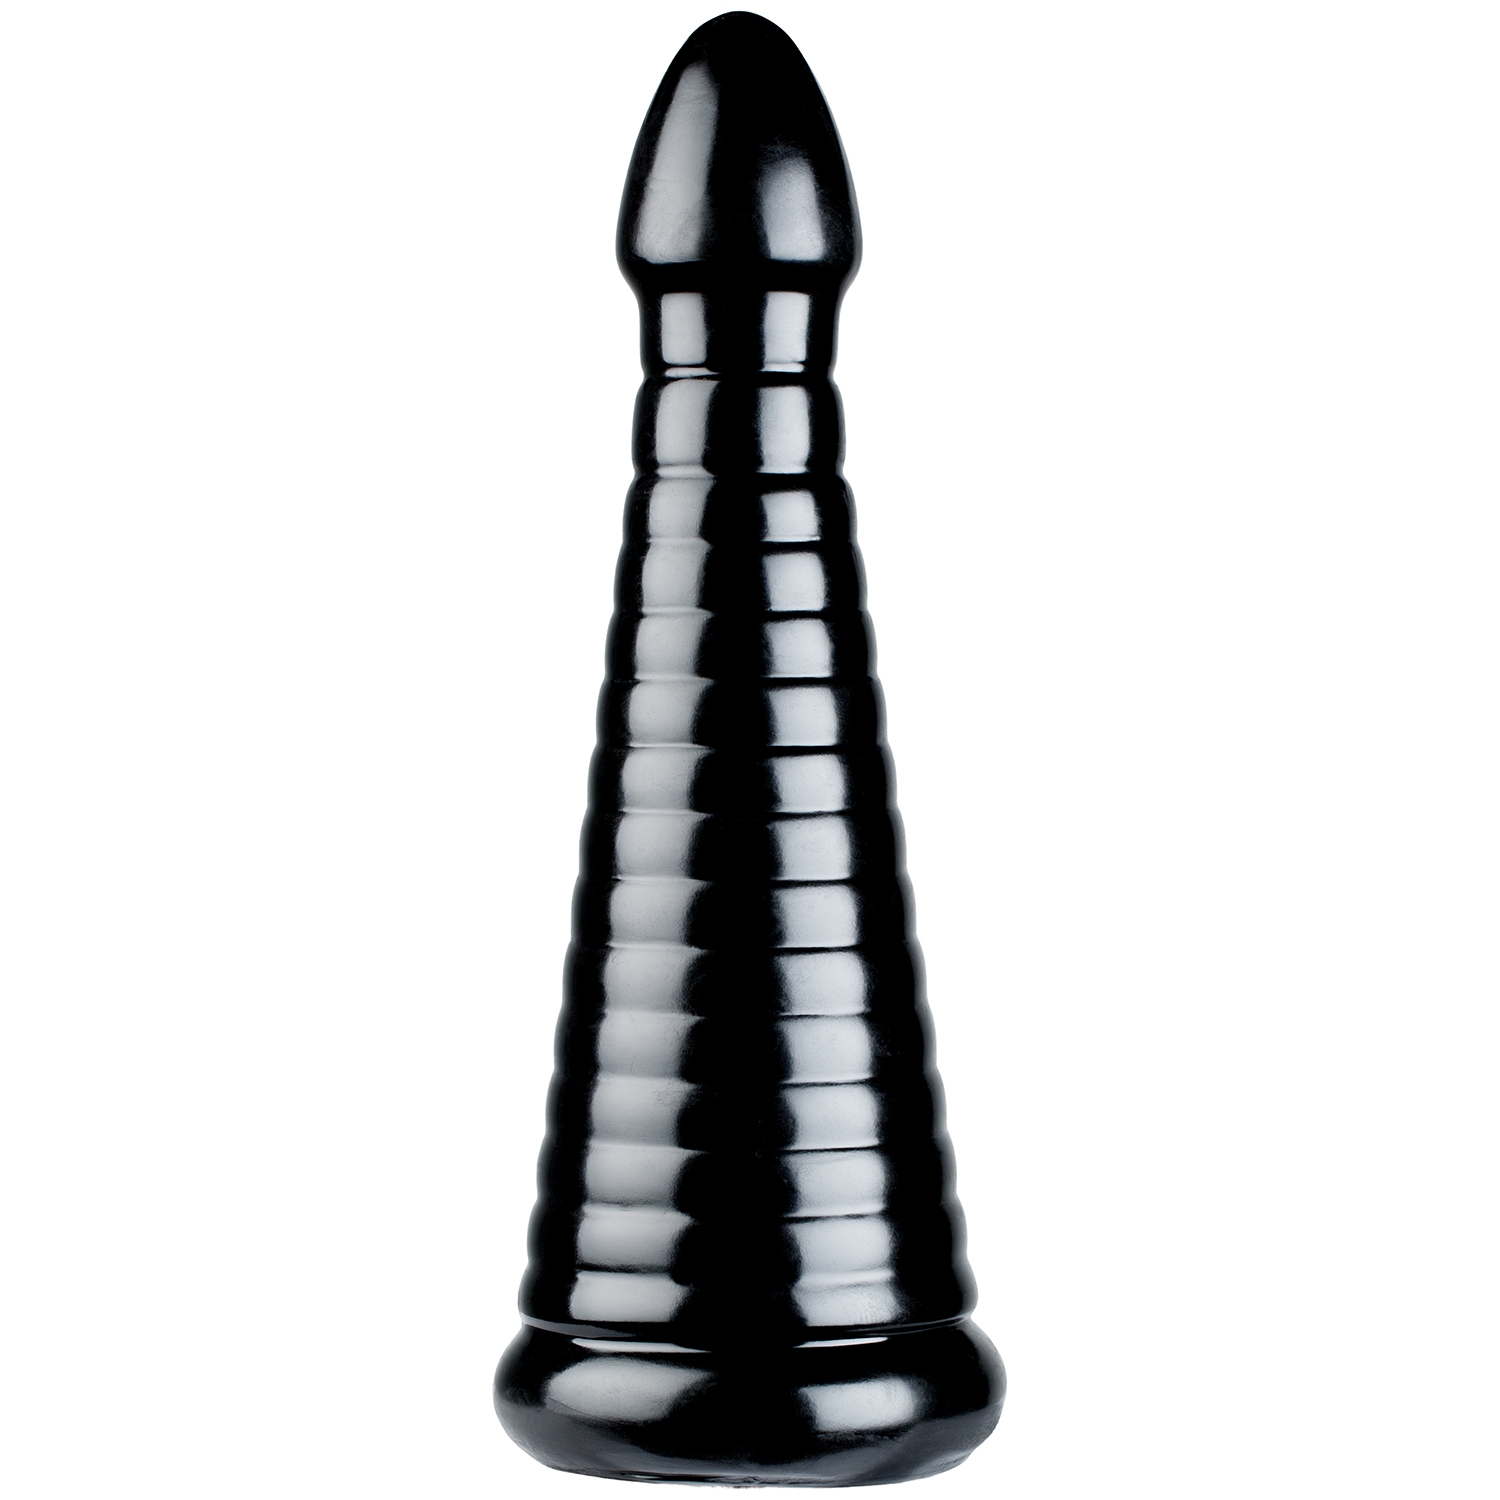 TitanMen Intimidator Anal Tool 28 cm - Black